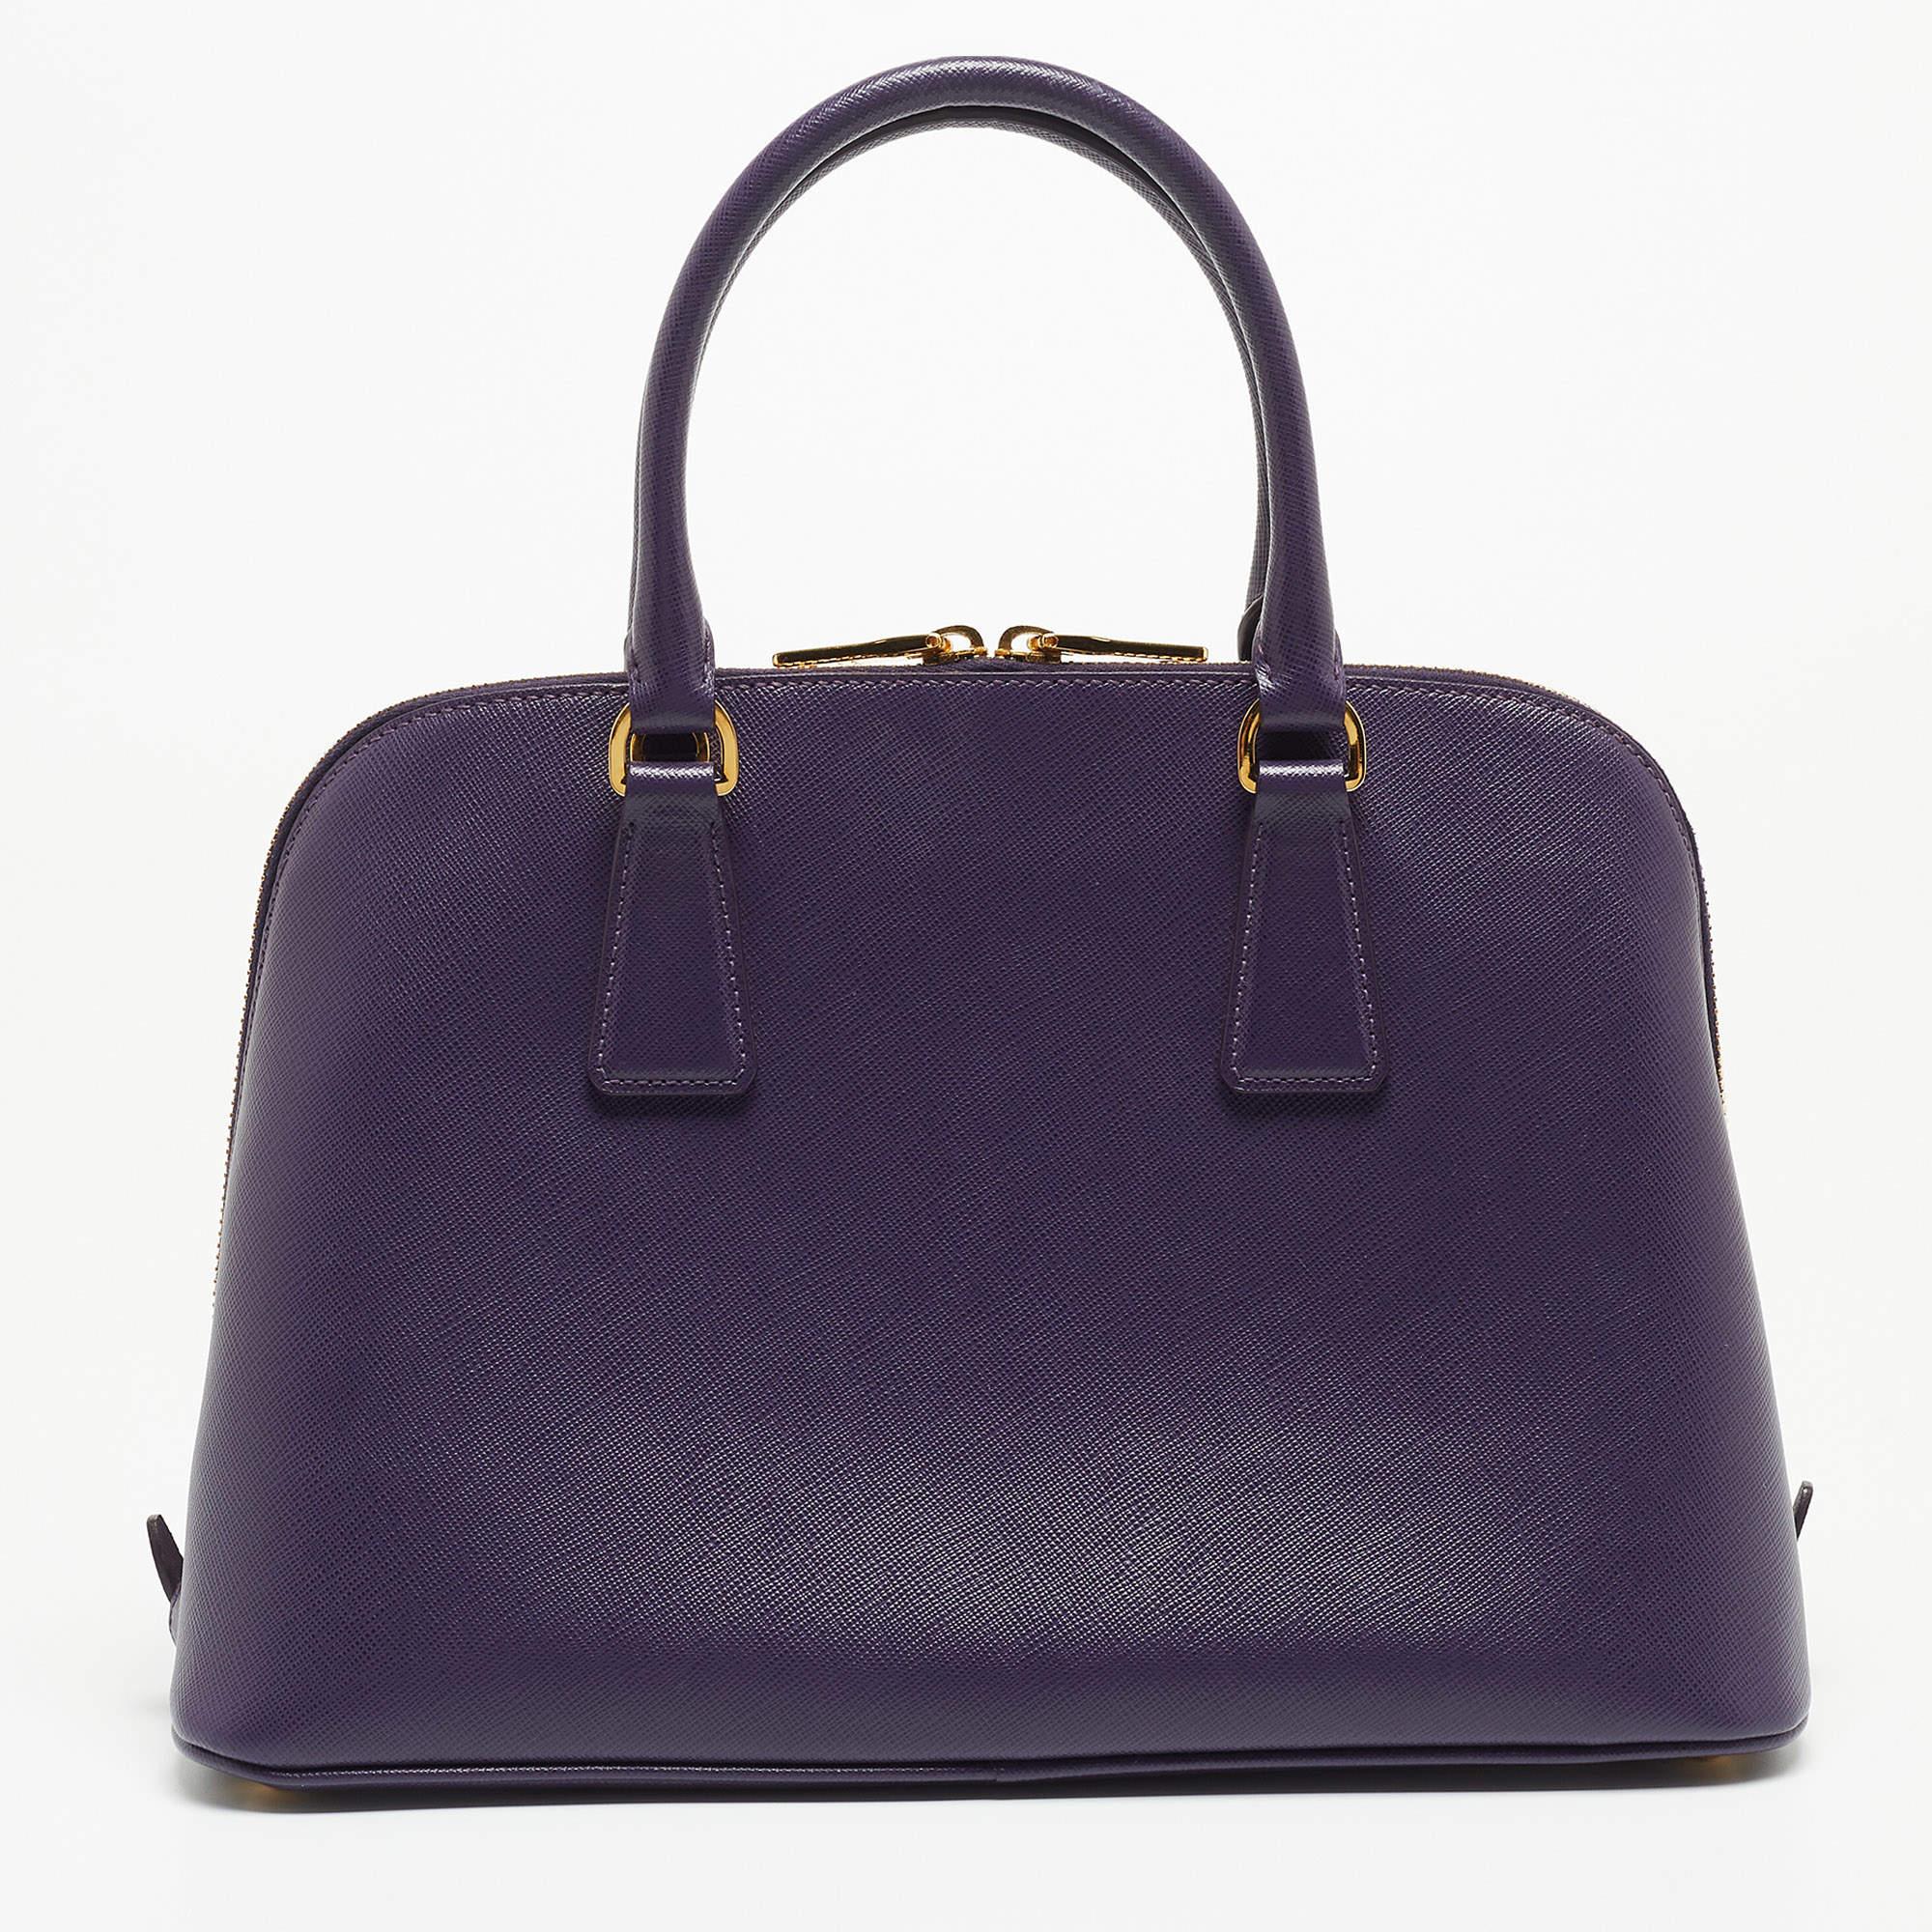  Sac à main Prada Saffiano Lux en cuir violet Promenade de taille moyenne Pour femmes 